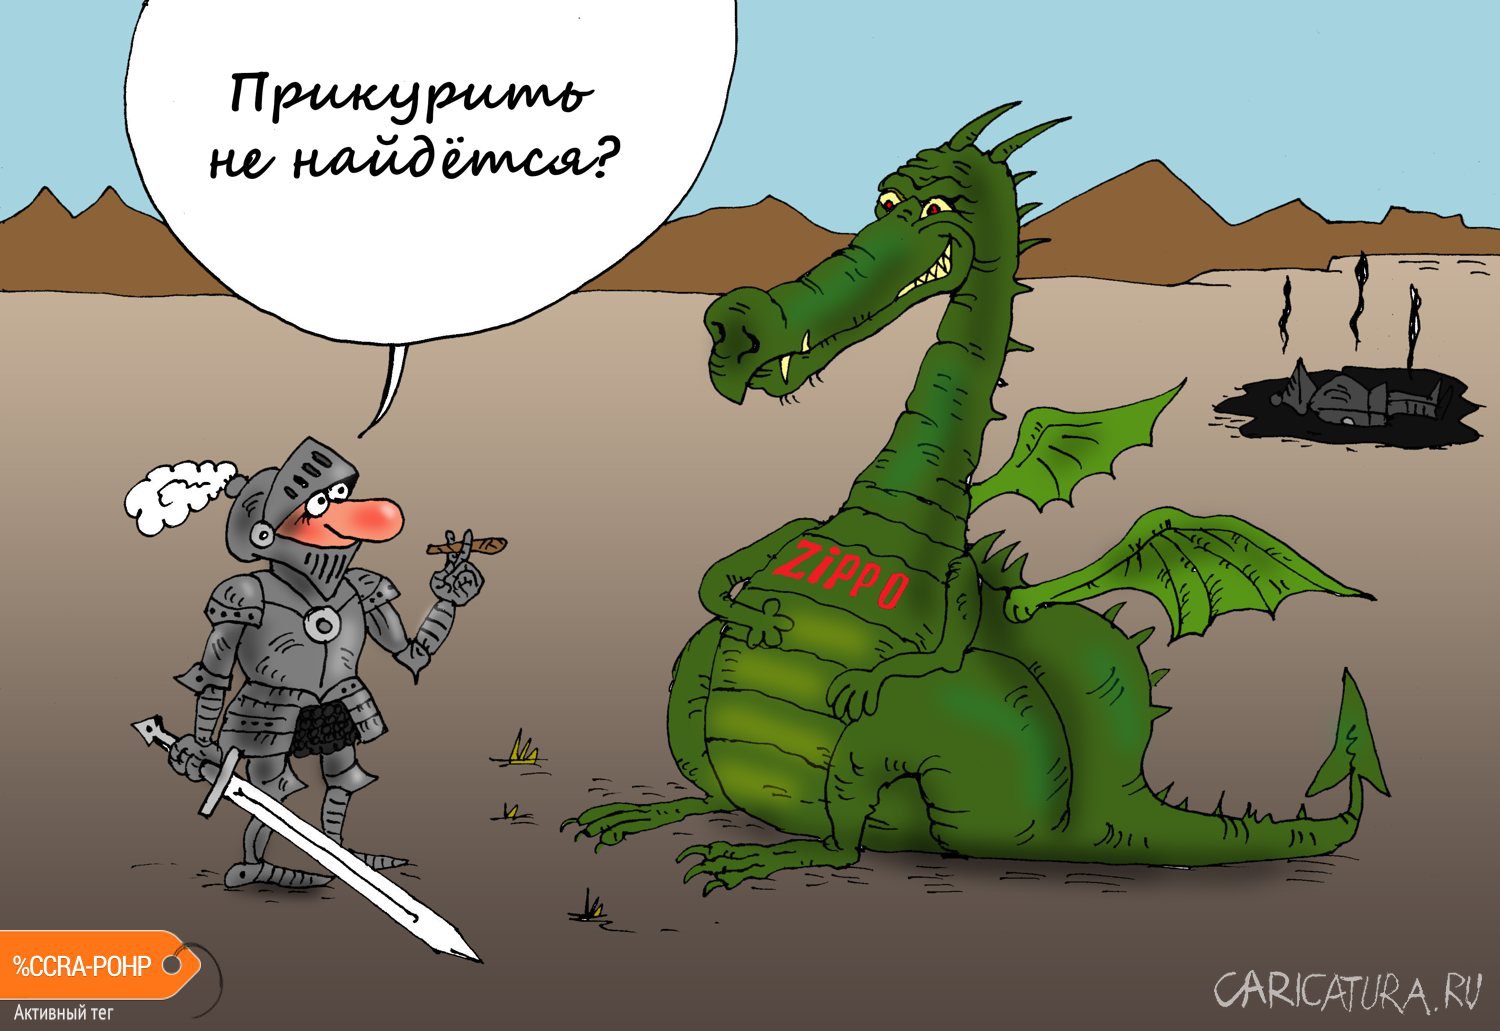 Карикатура "Поджигатель", Валерий Тарасенко